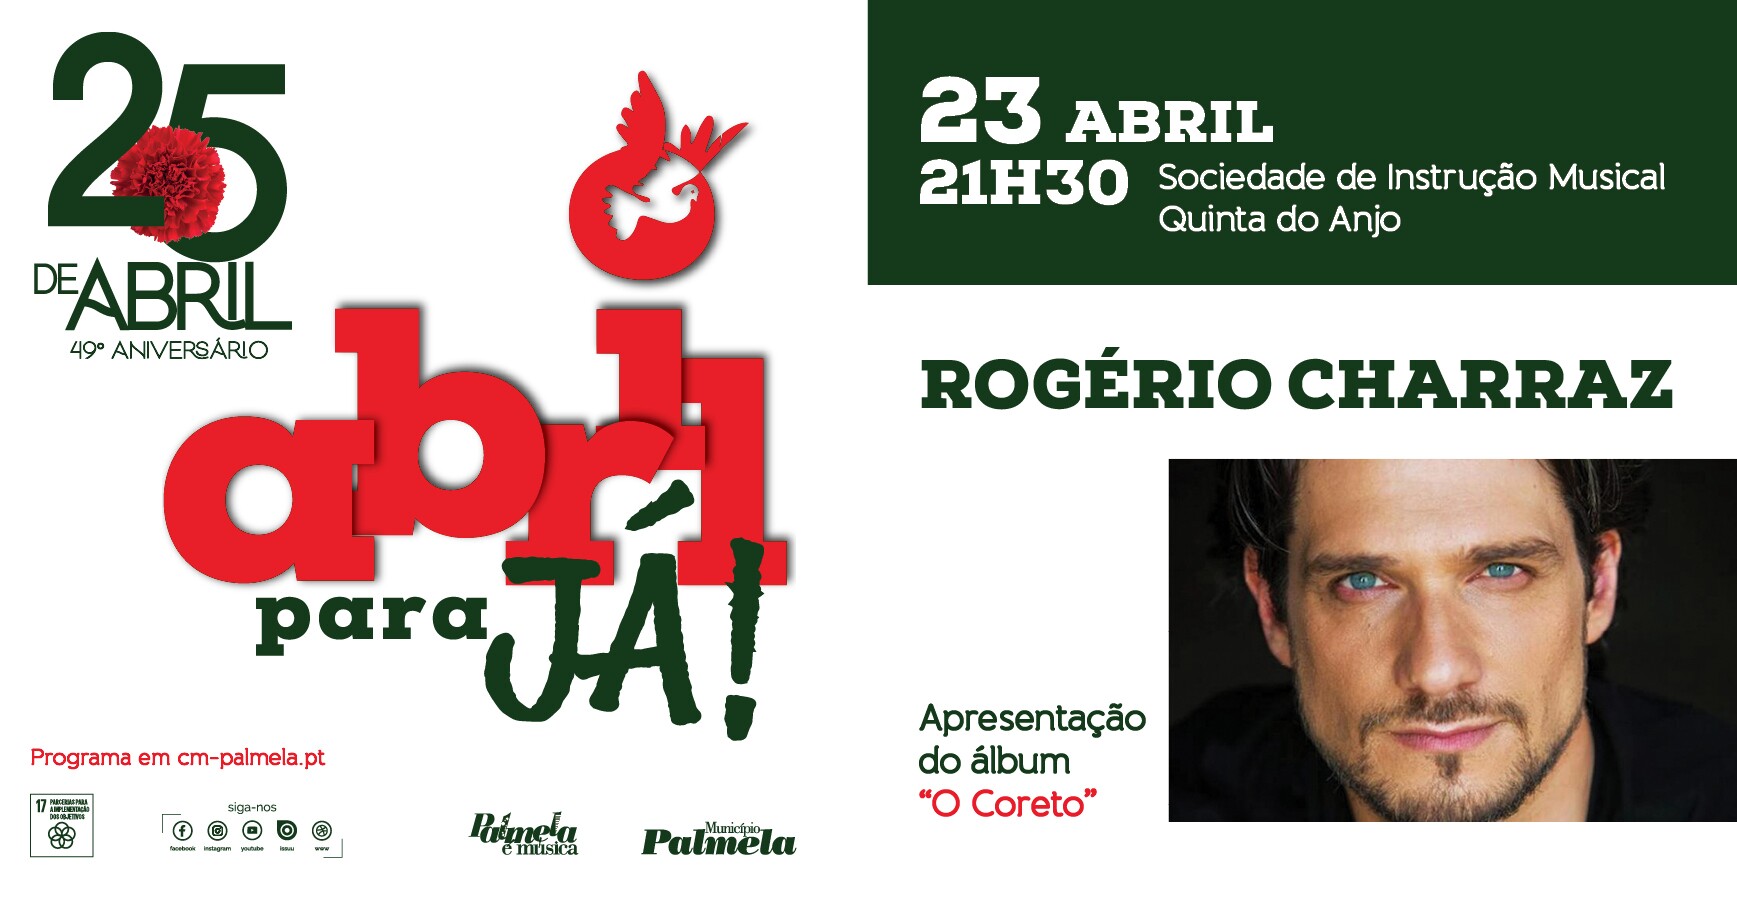 Abril para já! - Rogério Charraz em Quinta do Anjo a 23 abril